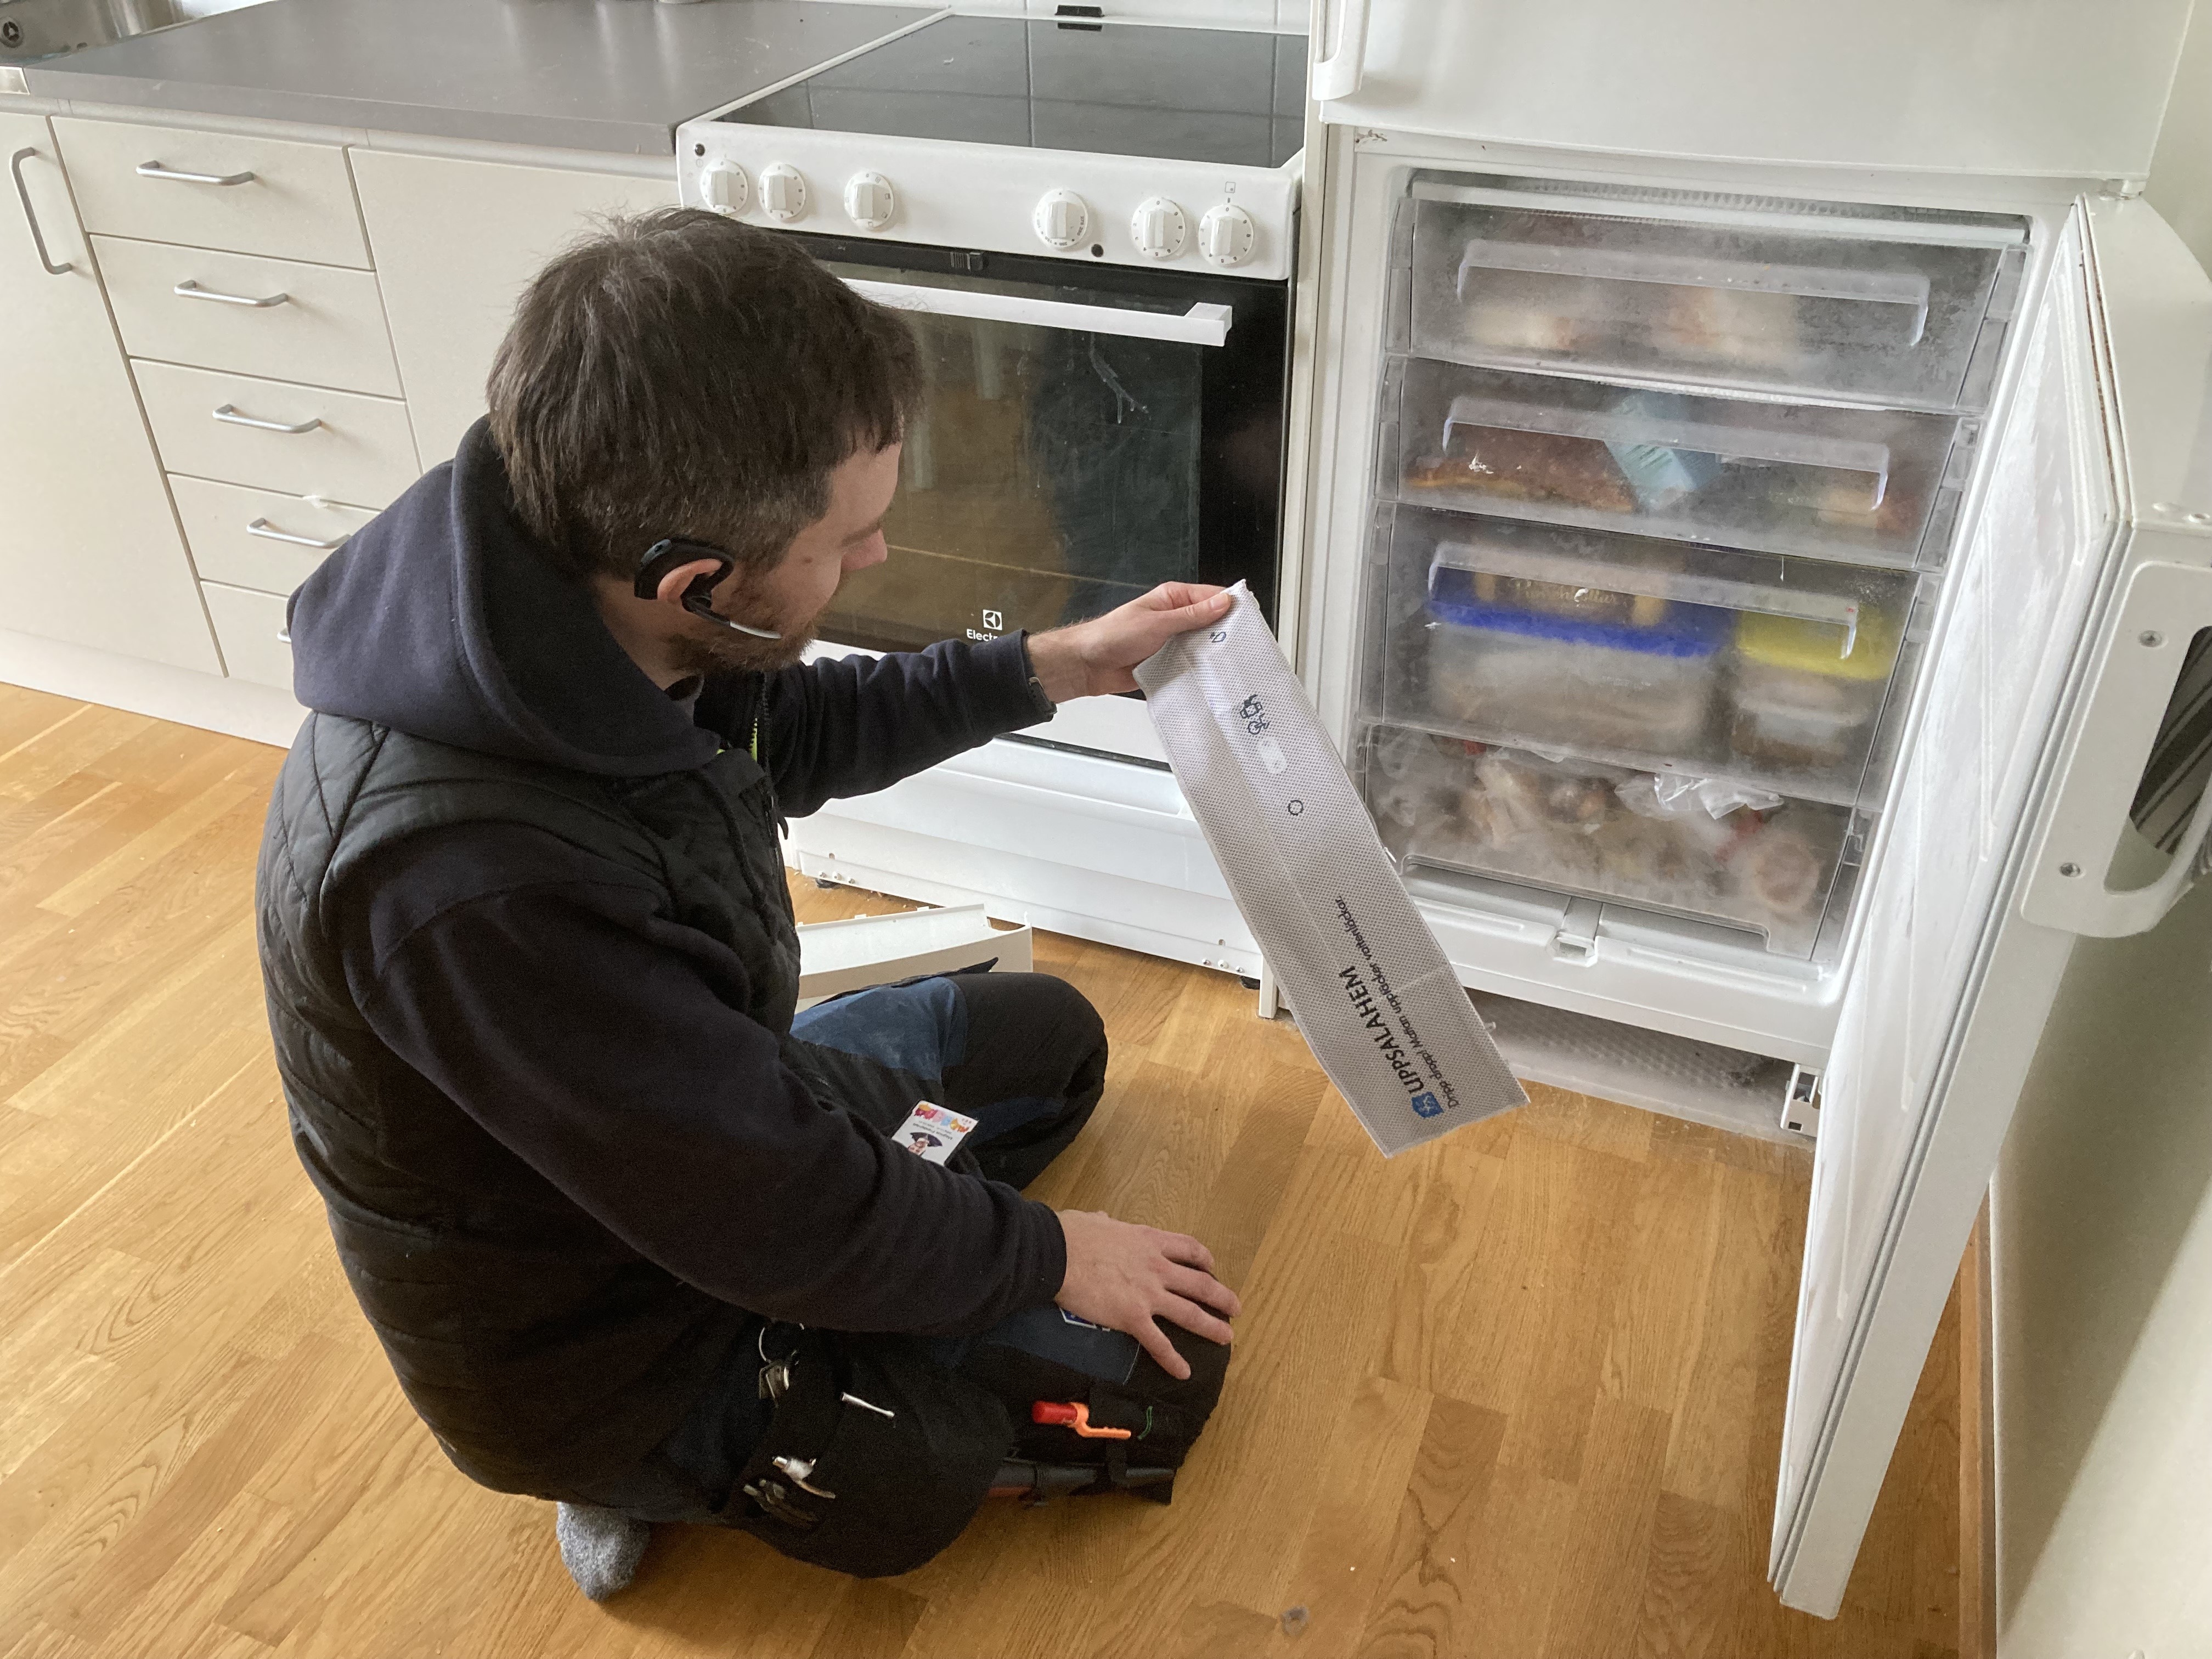 Uppsalahem testar smarta droppmattor under kylskåp